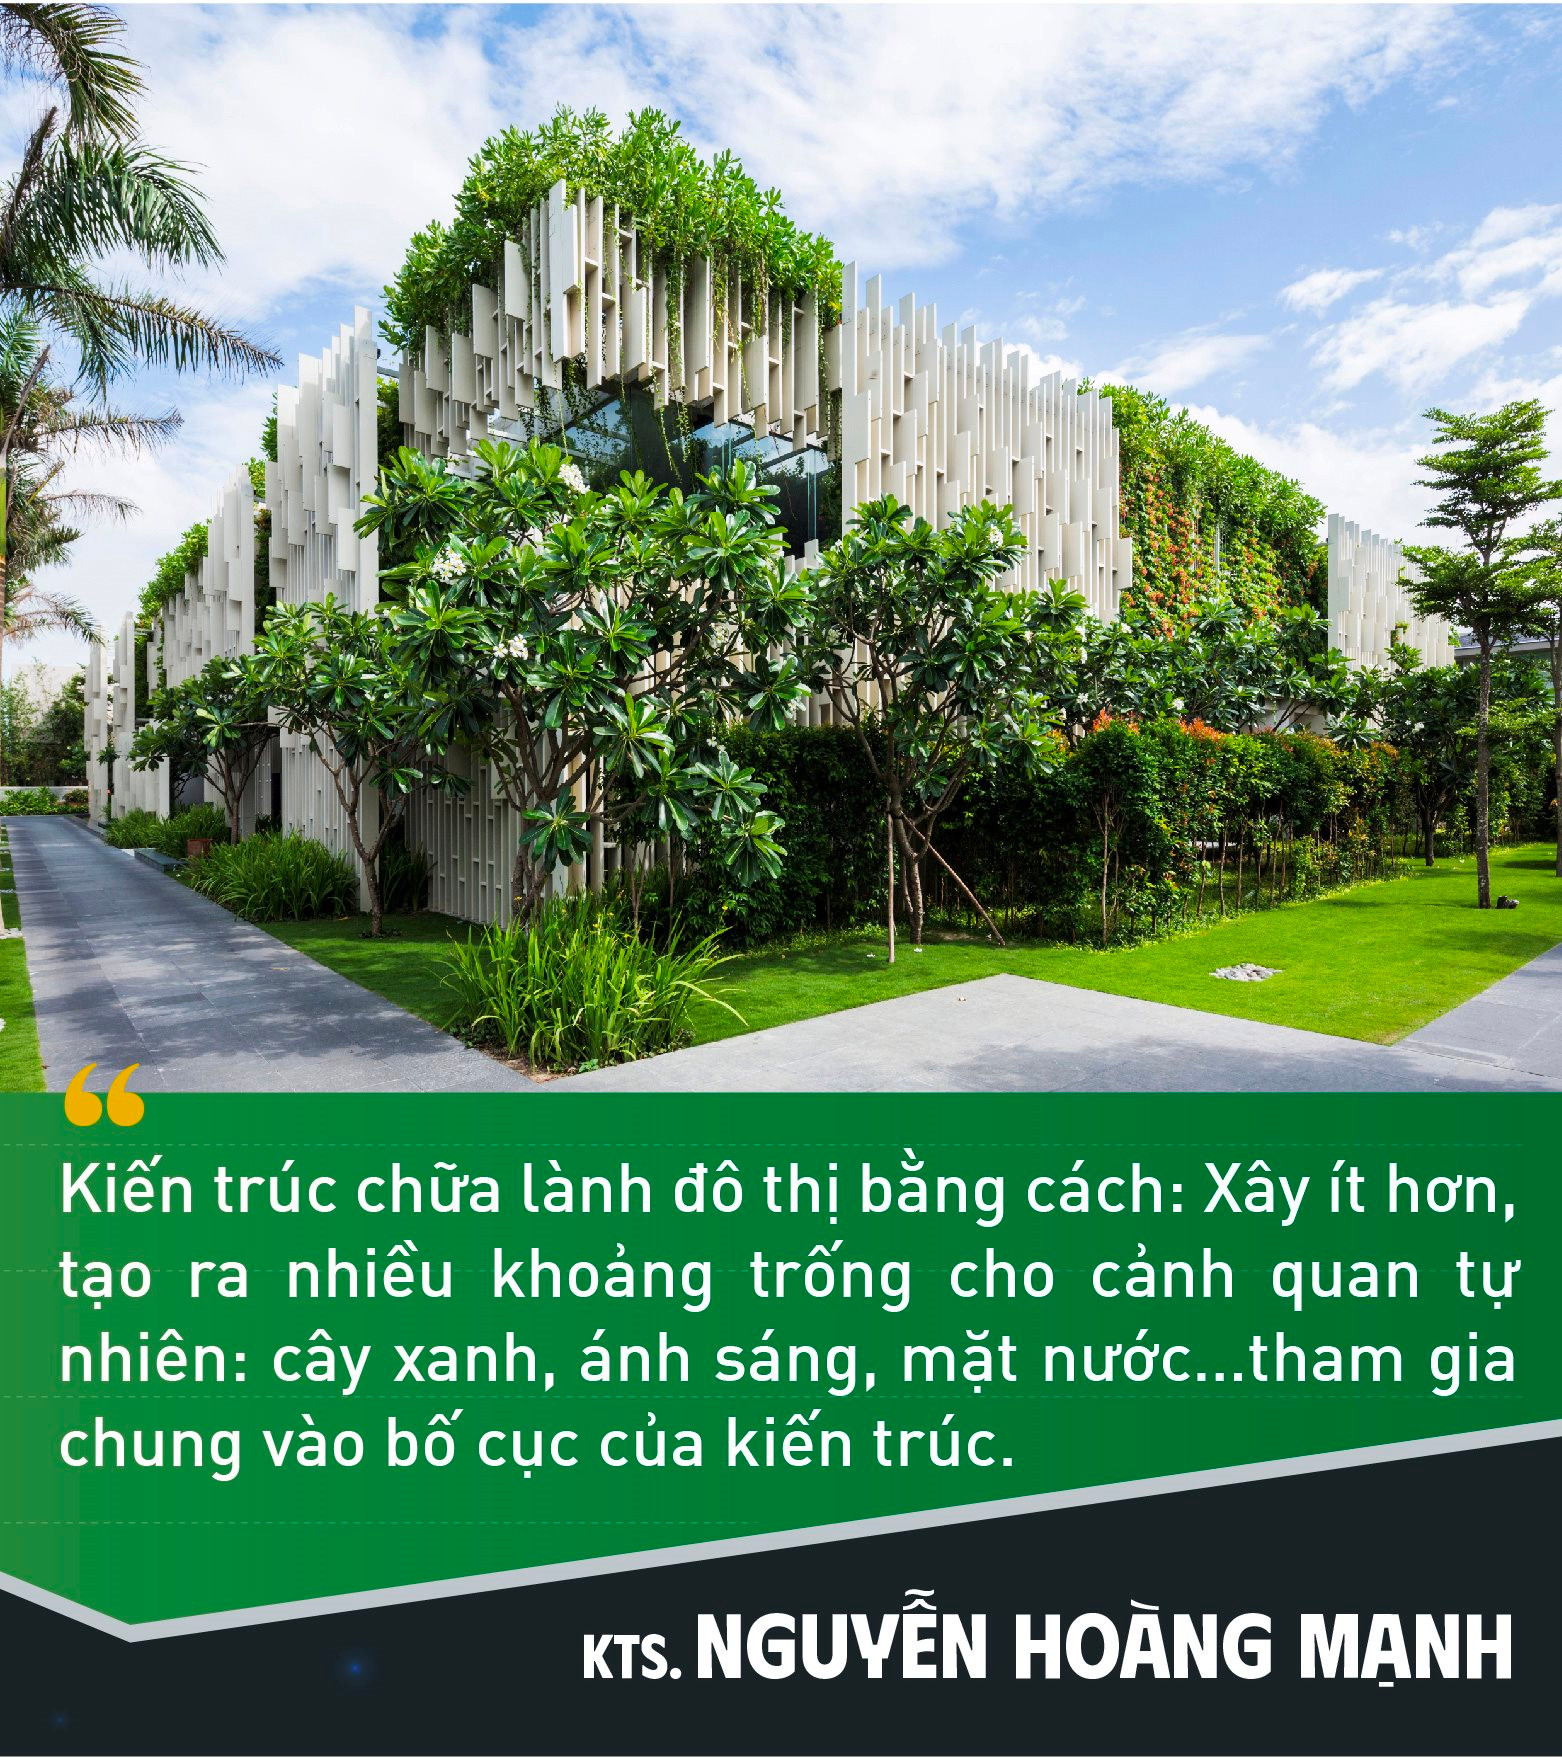 KTS. Nguyễn Hoàng Mạnh: "Khi thiết kế không nghĩ tới giải thưởng, lợi nhuận cũng không còn quá quan trọng" - Ảnh 4.